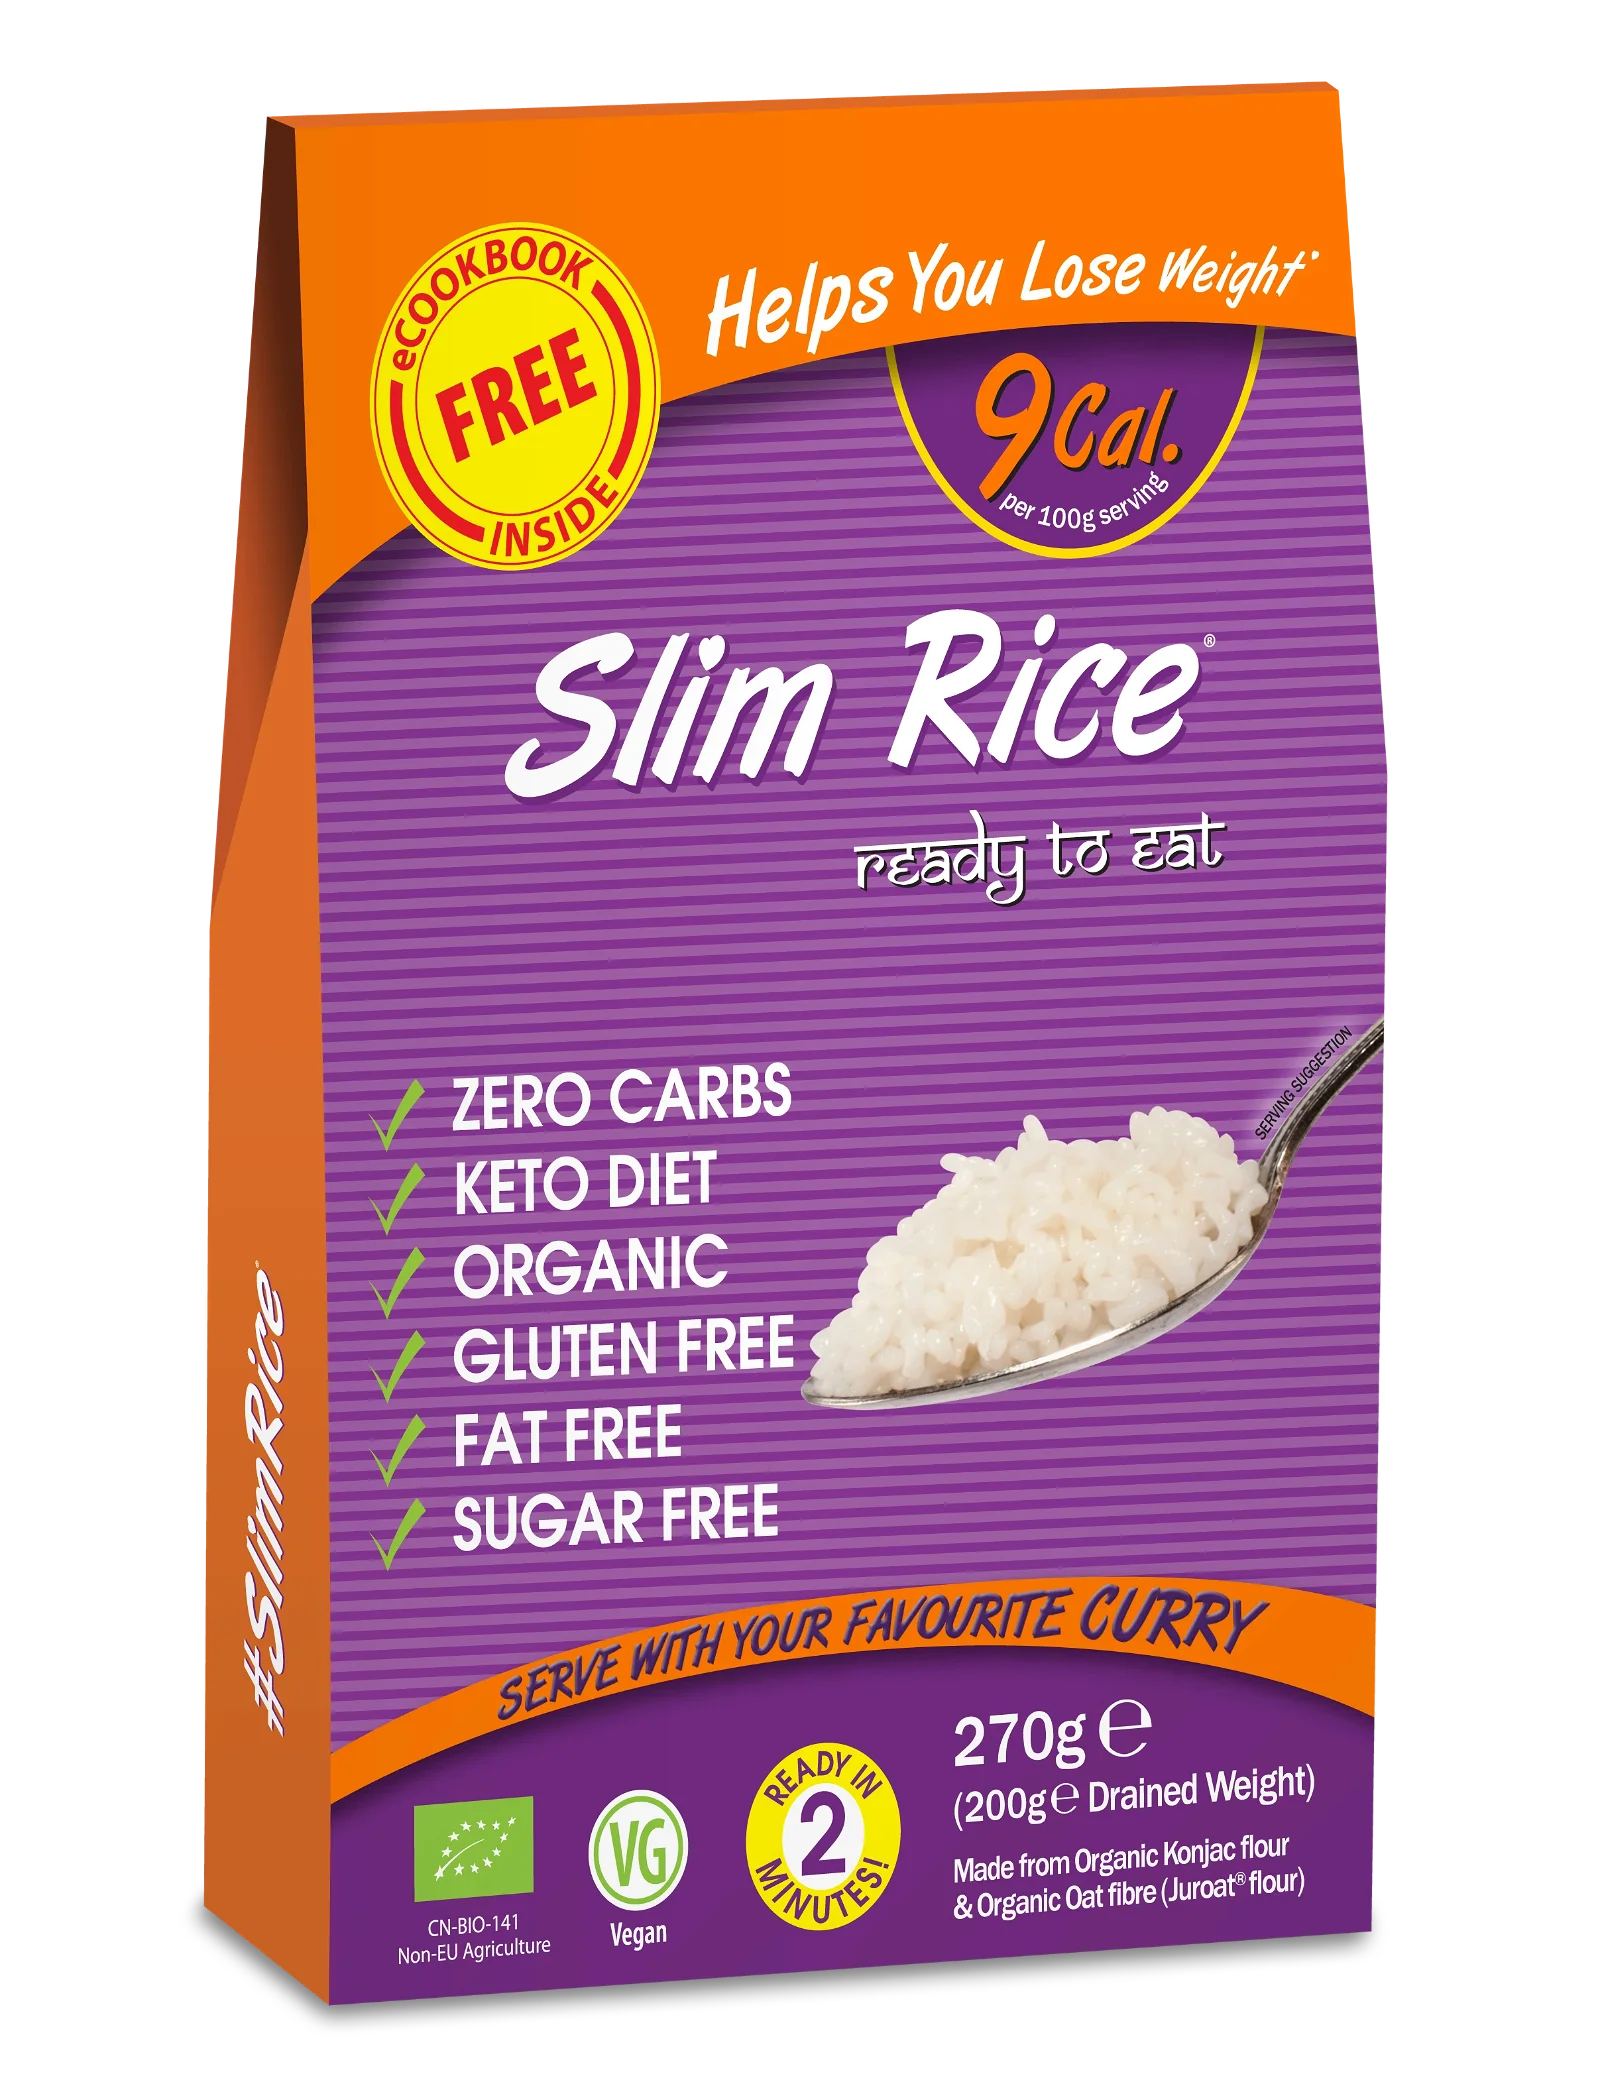 Slim Rice Original - Pack of 5